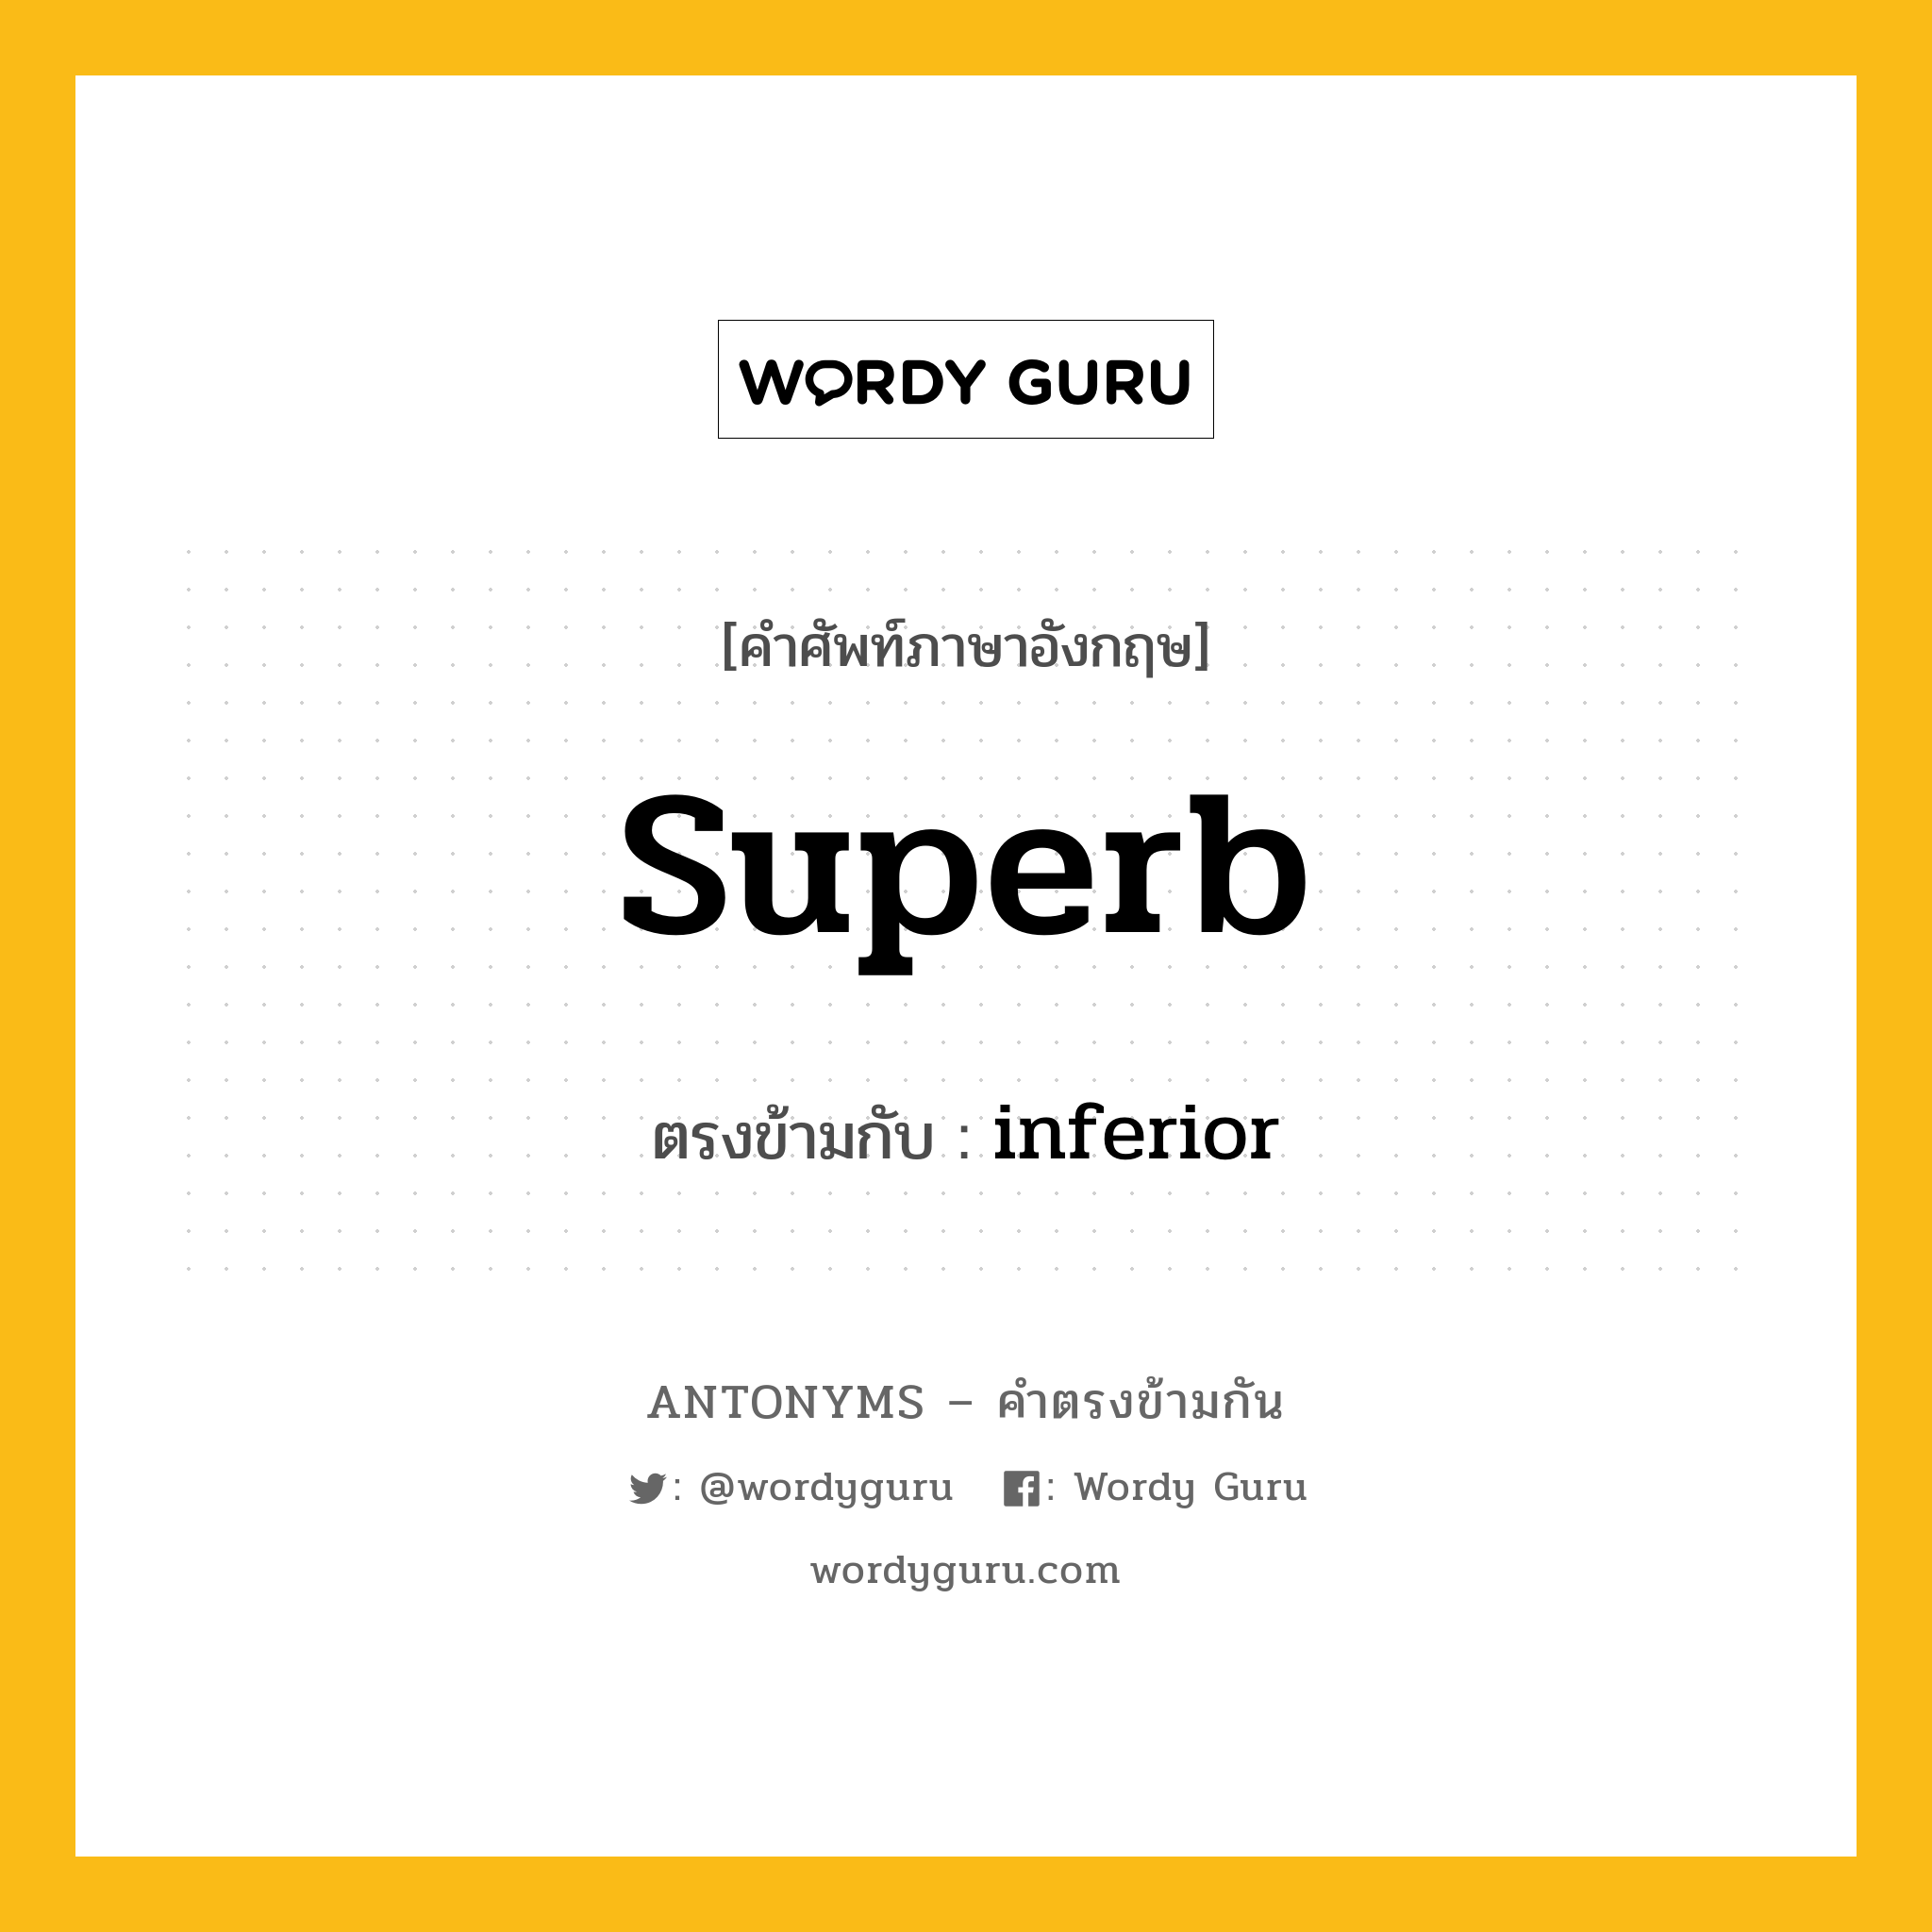 superb เป็นคำตรงข้ามกับคำไหนบ้าง?, คำศัพท์ภาษาอังกฤษ superb ตรงข้ามกับ inferior หมวด inferior